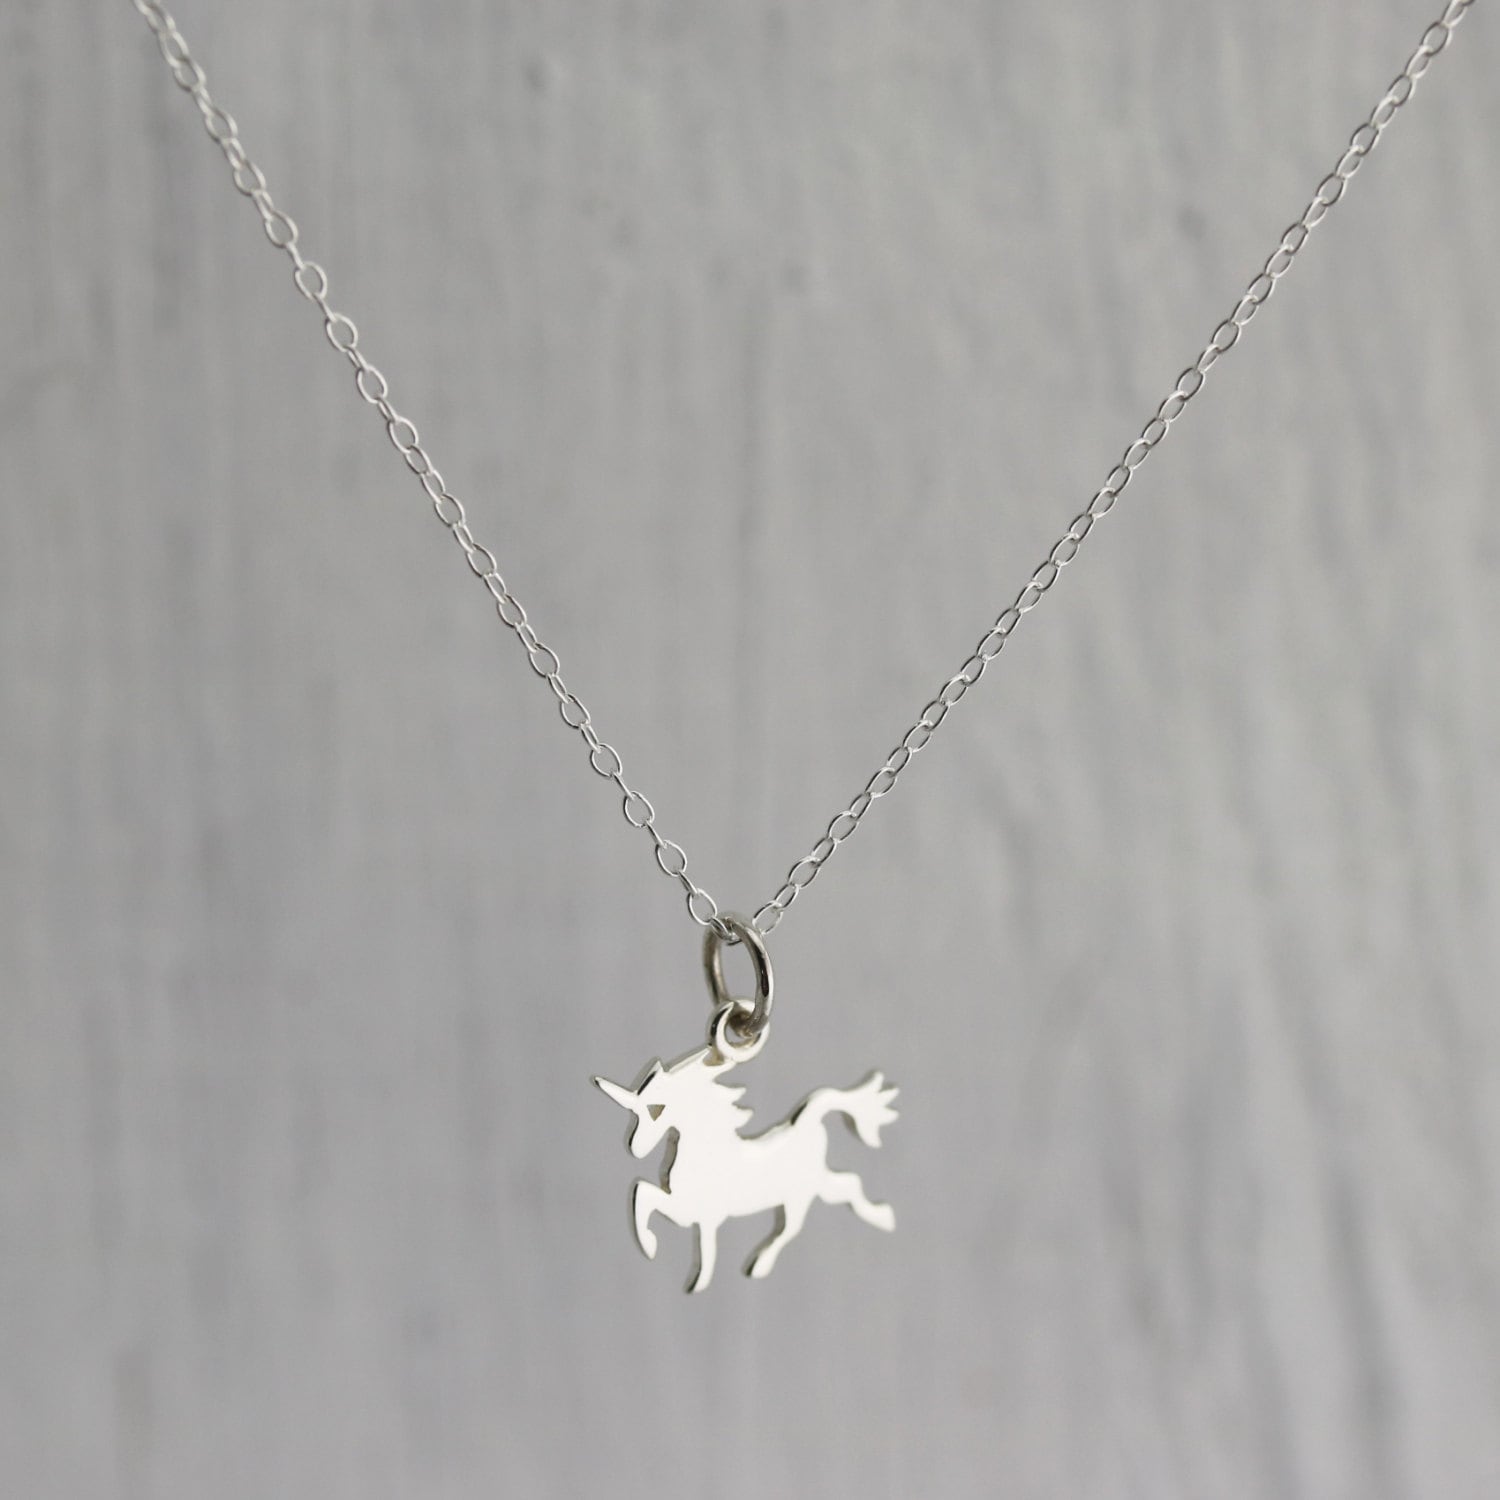 Wholesale Lot of 20 pcs Silver Petite Unicorn Necklace for Unicorn Theme Parties 